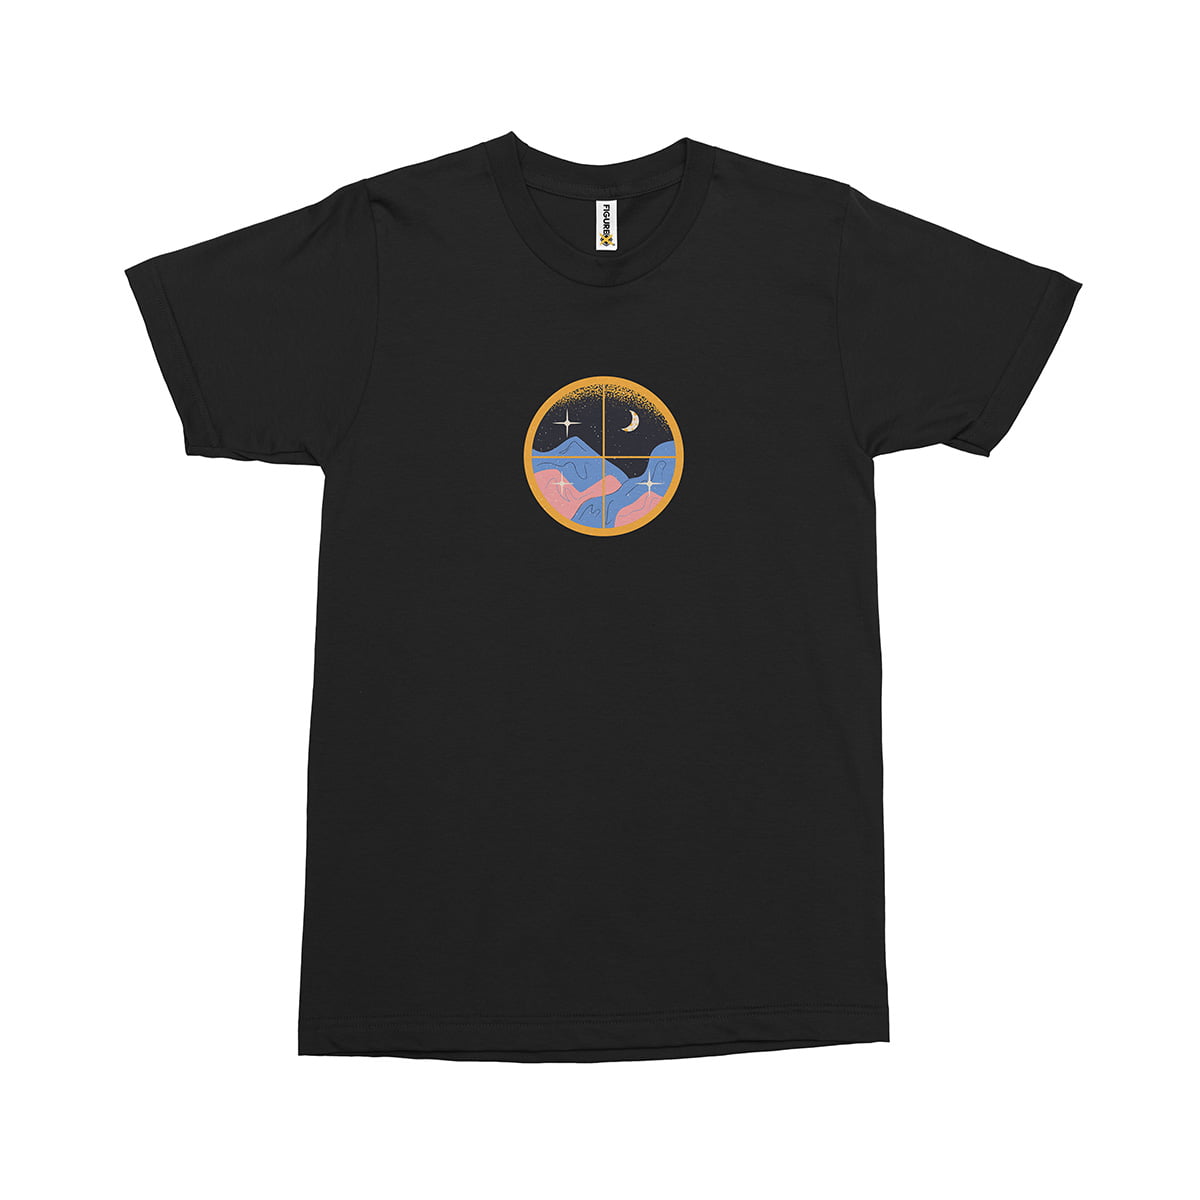 Ay ve tepe fxsca2362c erkek tshirt siyah orta kucuk - mistik yıldızlar, ay ve tepe - astroloji baskılı erkek t-shirt - figurex